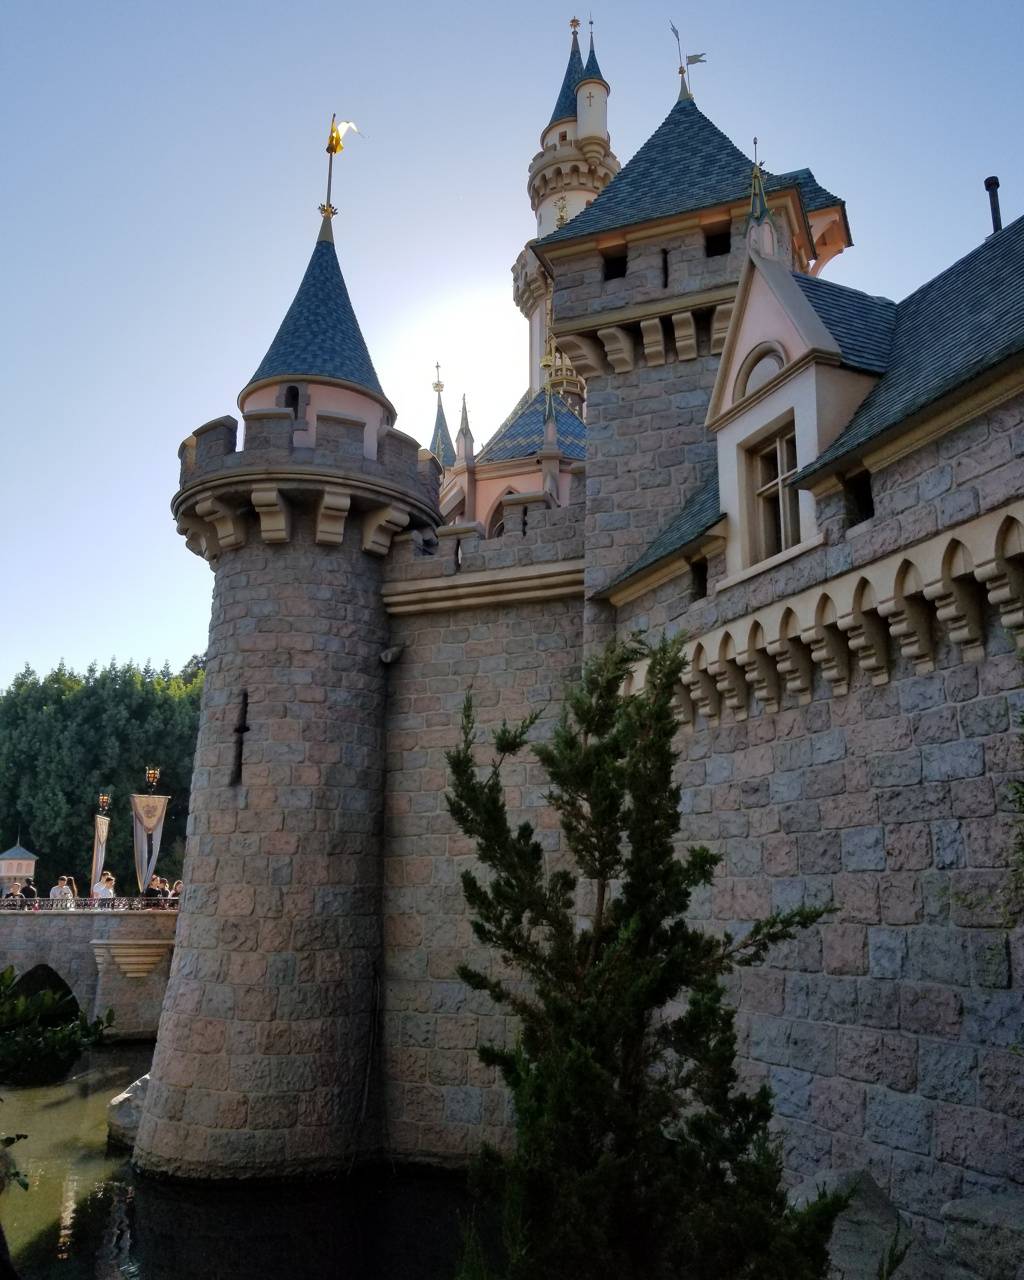 Princess Castle Wallpapers - Top Free Princess Castle Backgrounds